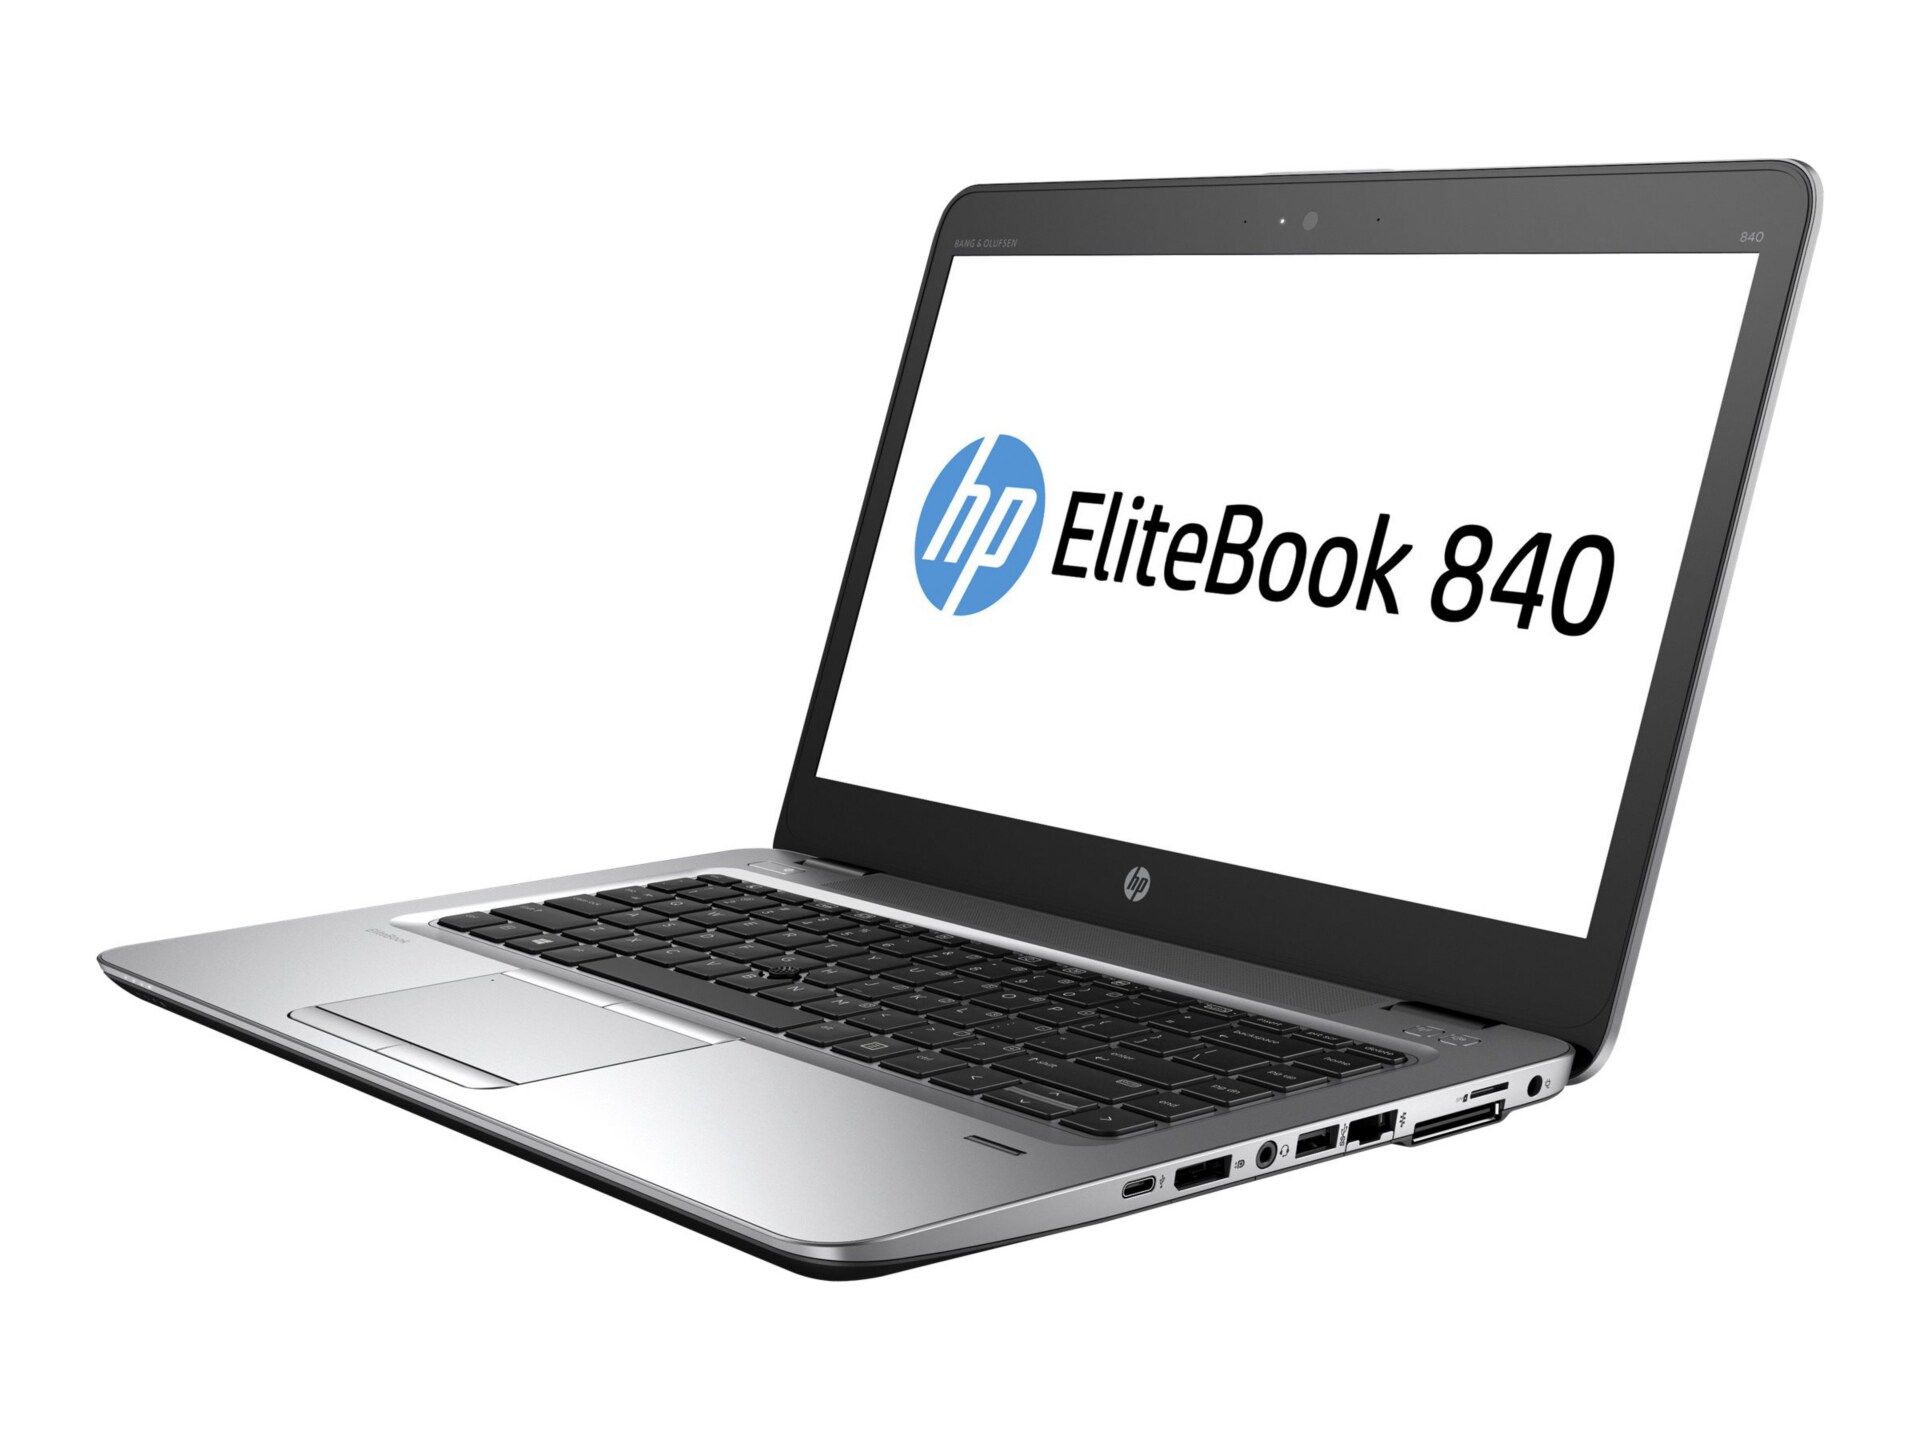 HP EliteBook 840 G3 - 14" - Core i7 6600U - 8 GB RAM - 512 GB SSD - US